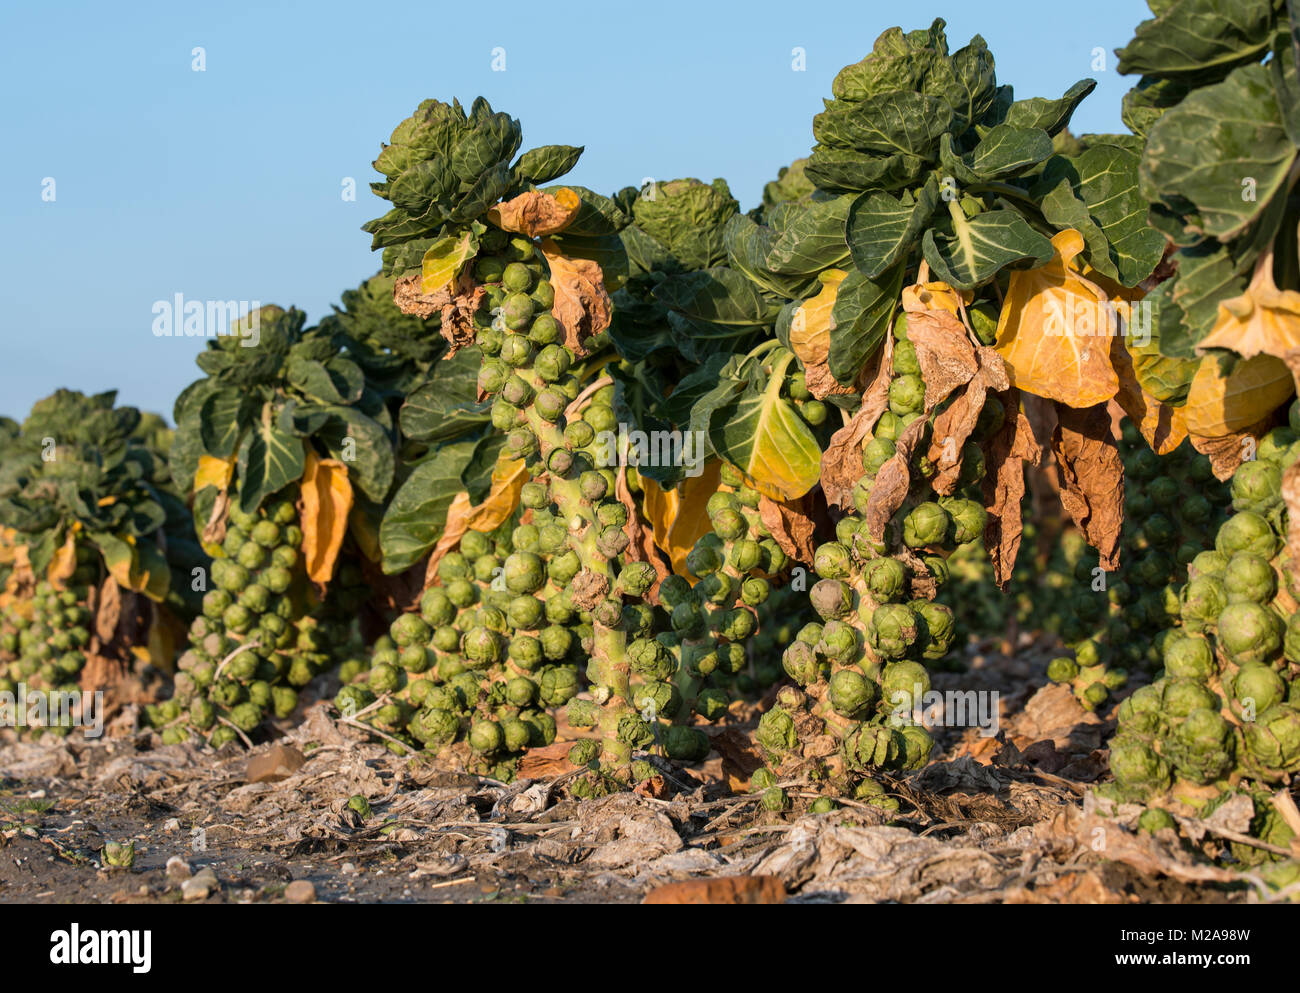 Les graines germées prêtes pour la récolte des légumes sains bonne nourriture, le chou de Bruxelles est membre de la famille brassica avec brocoli, chou Banque D'Images